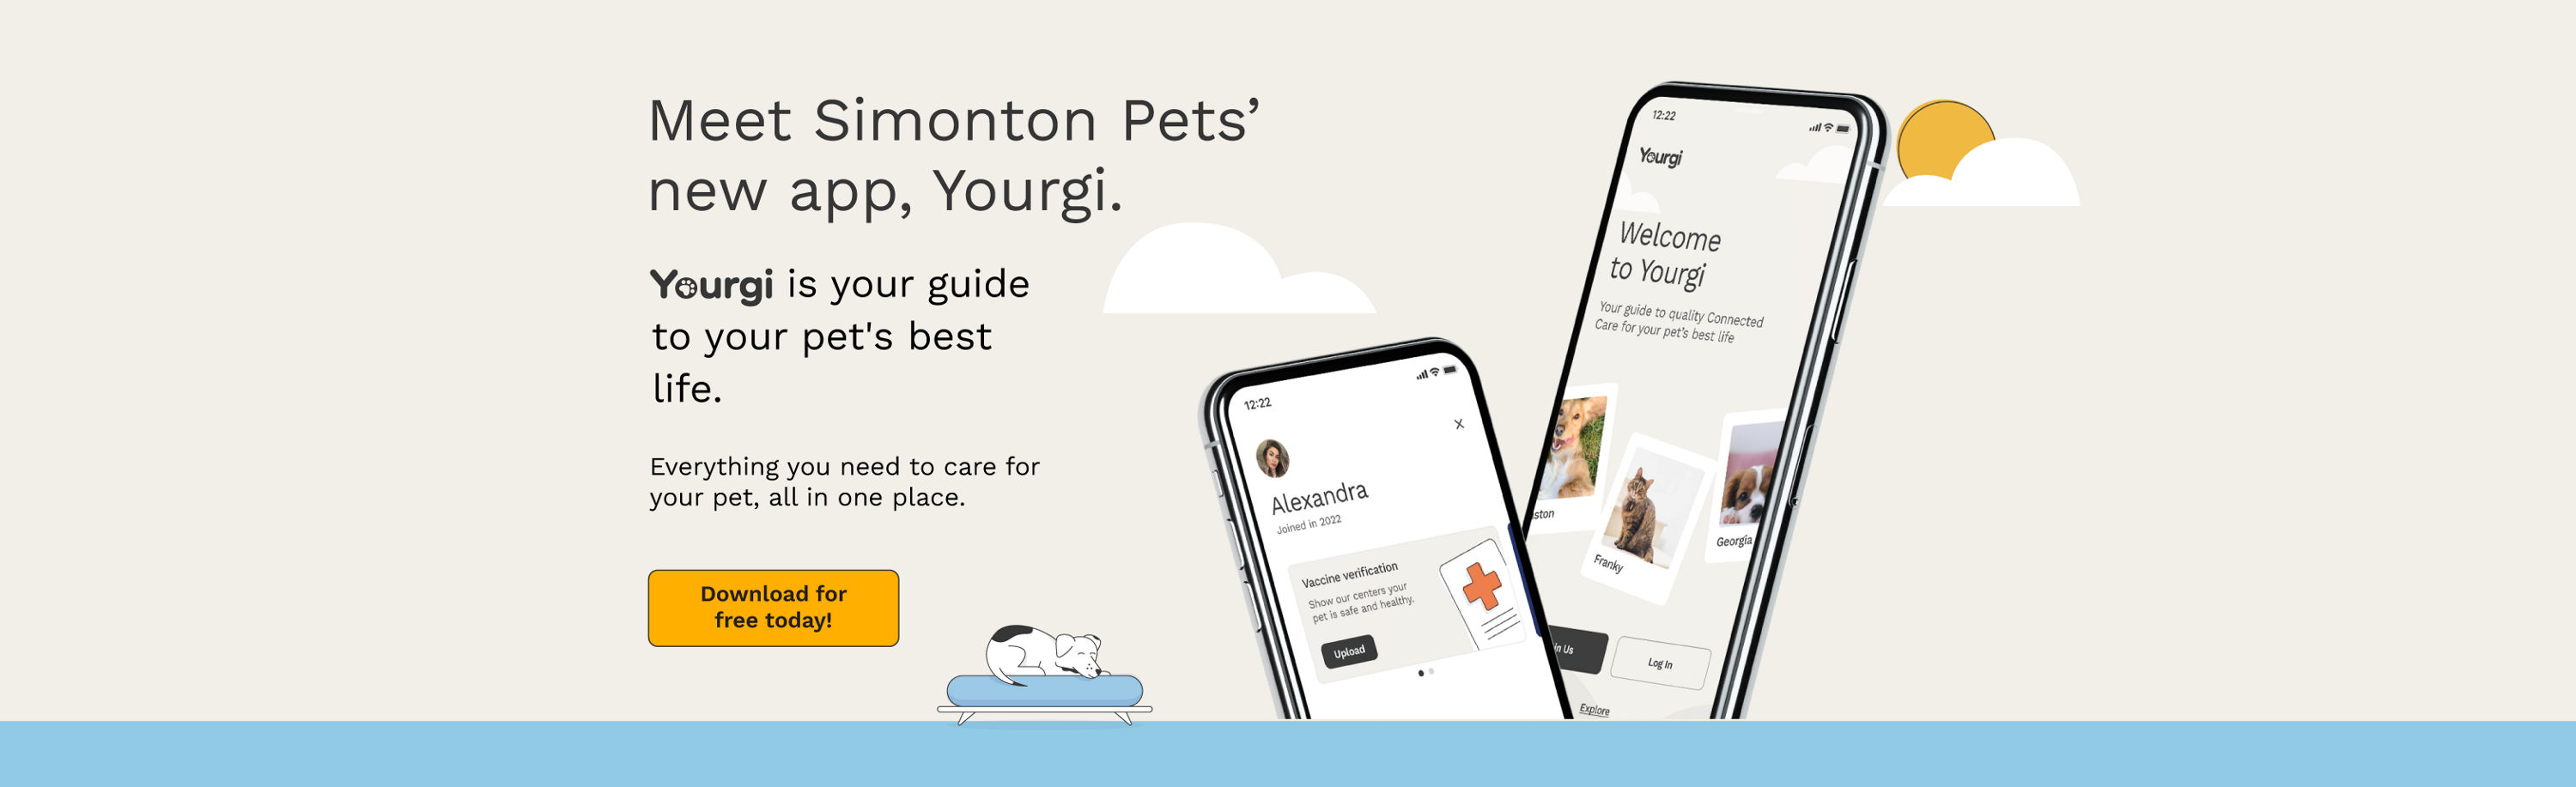 Meet Simonton Pet's new app, Yourgi.